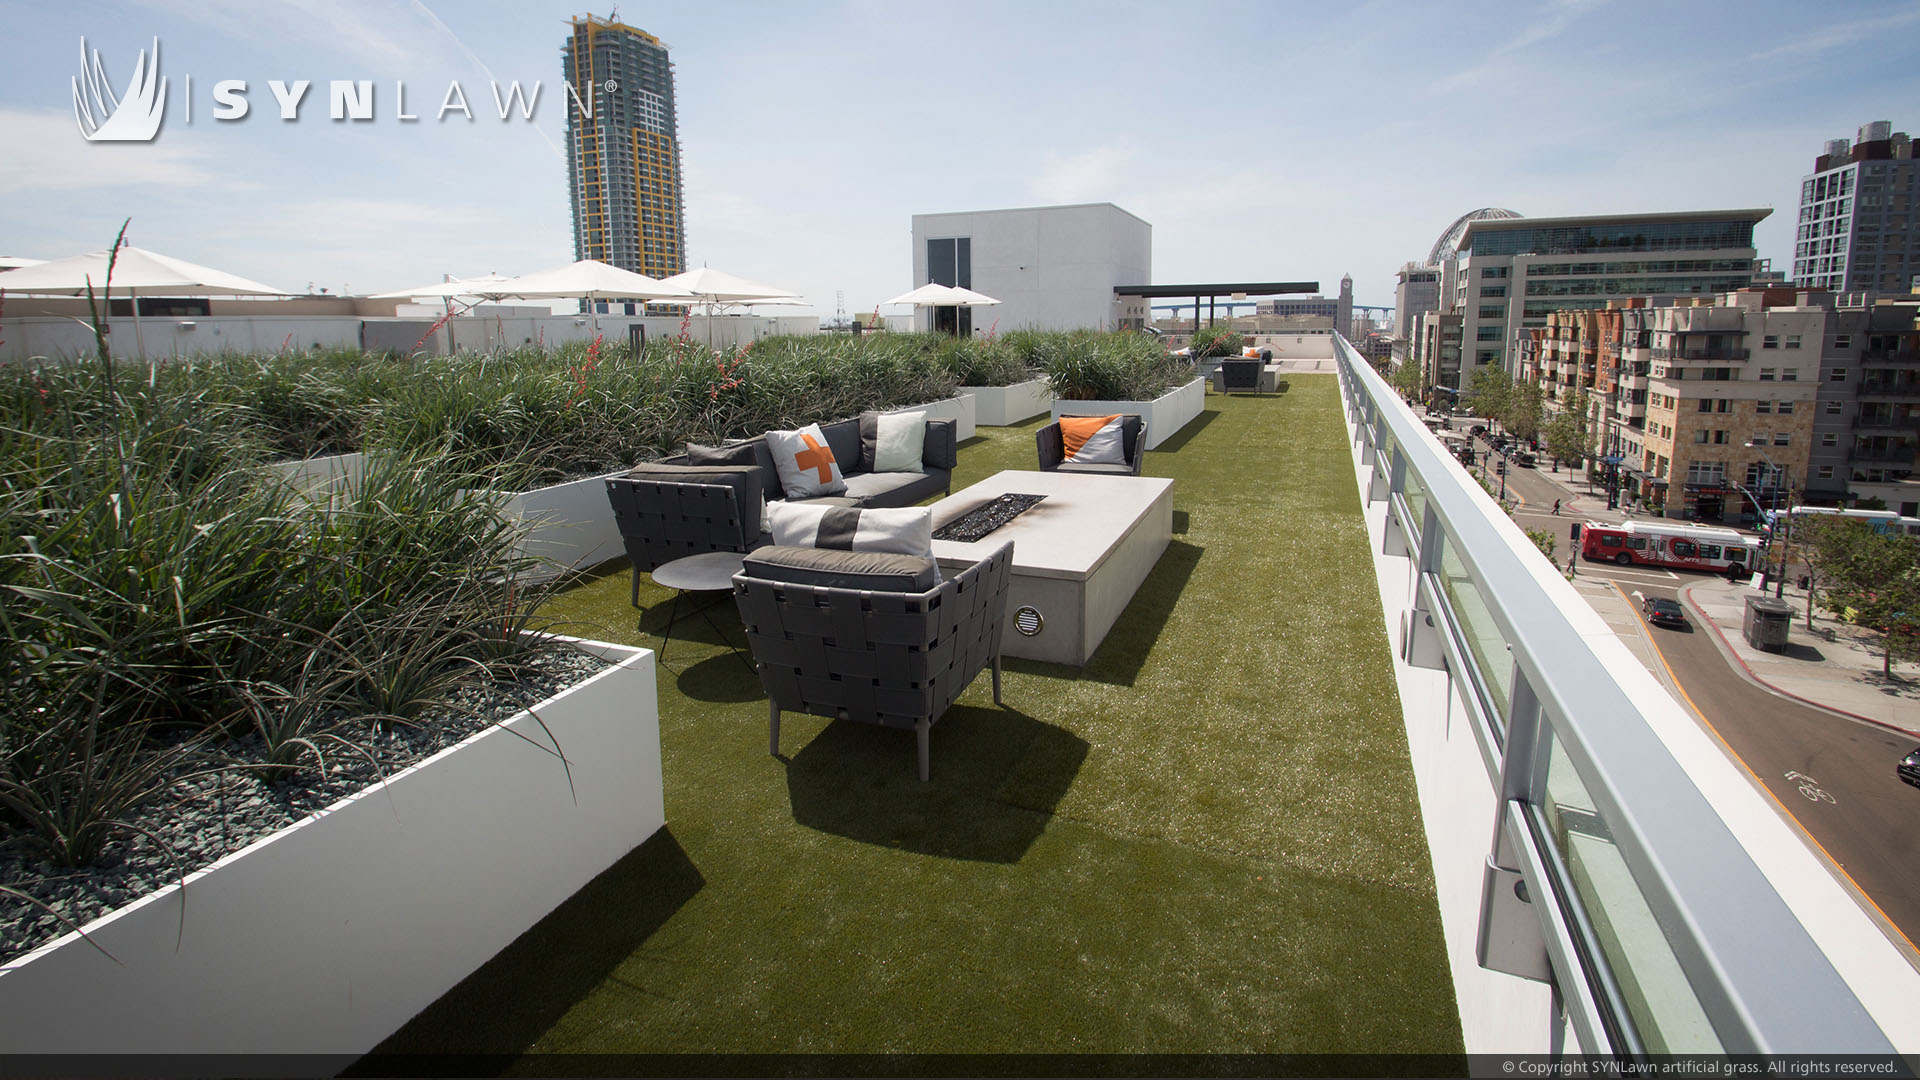 Rooftop artificial grass installation